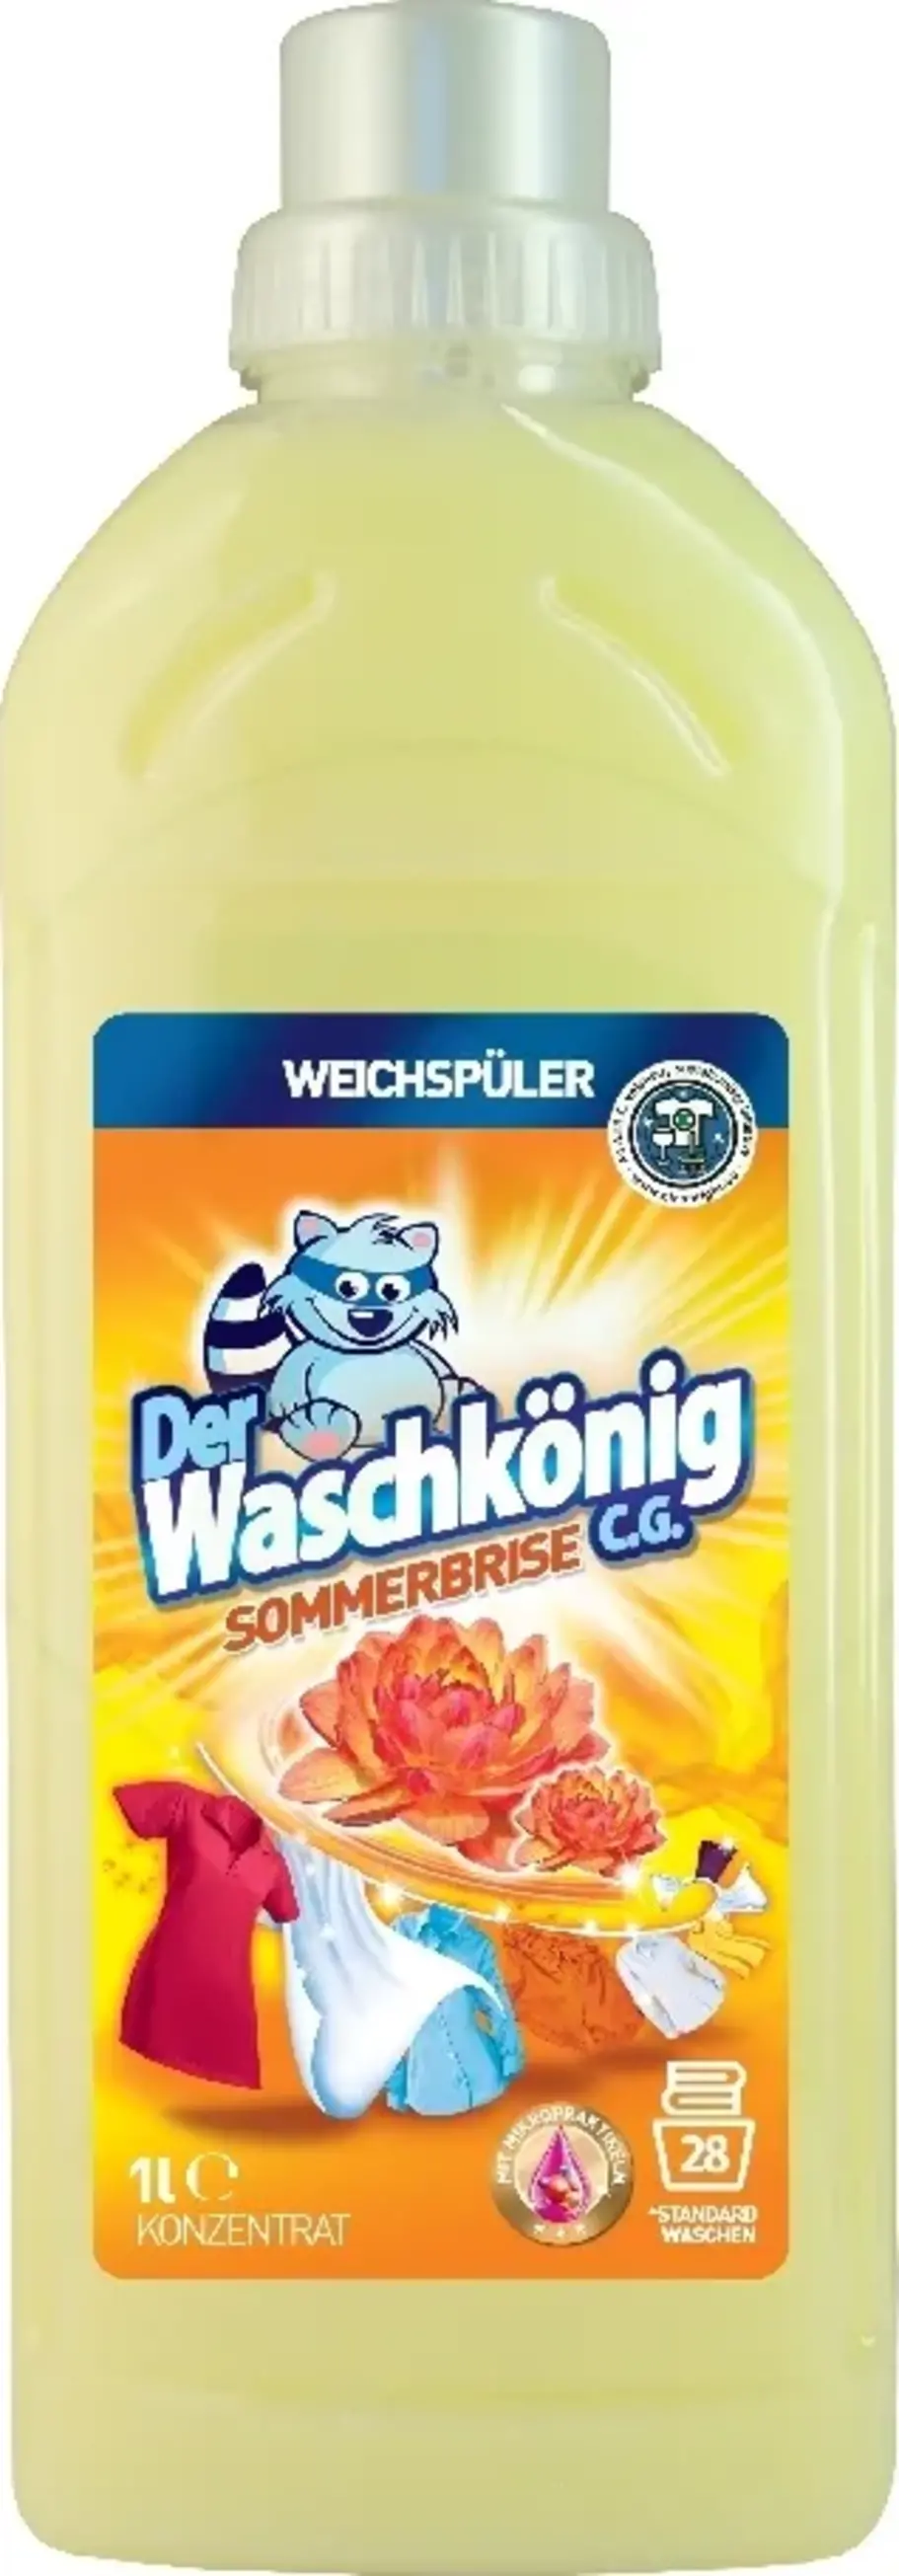 Waschkönig Aviváž Sommerbrise 1 l (28 praní)